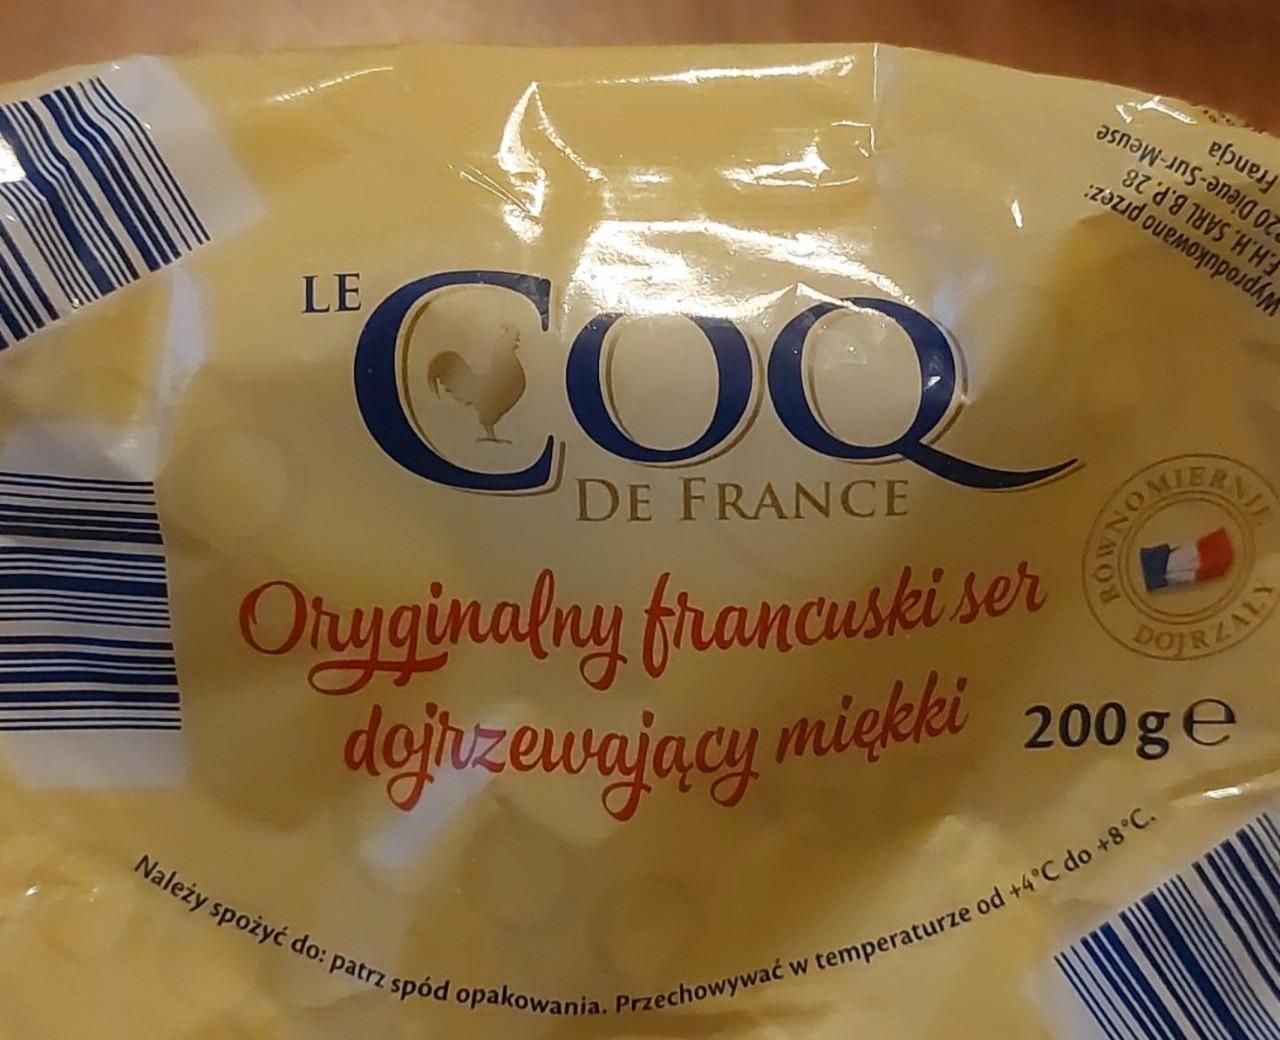 Zdjęcia - Oryginalny francuski ser dojrzewający miękki Le COQ